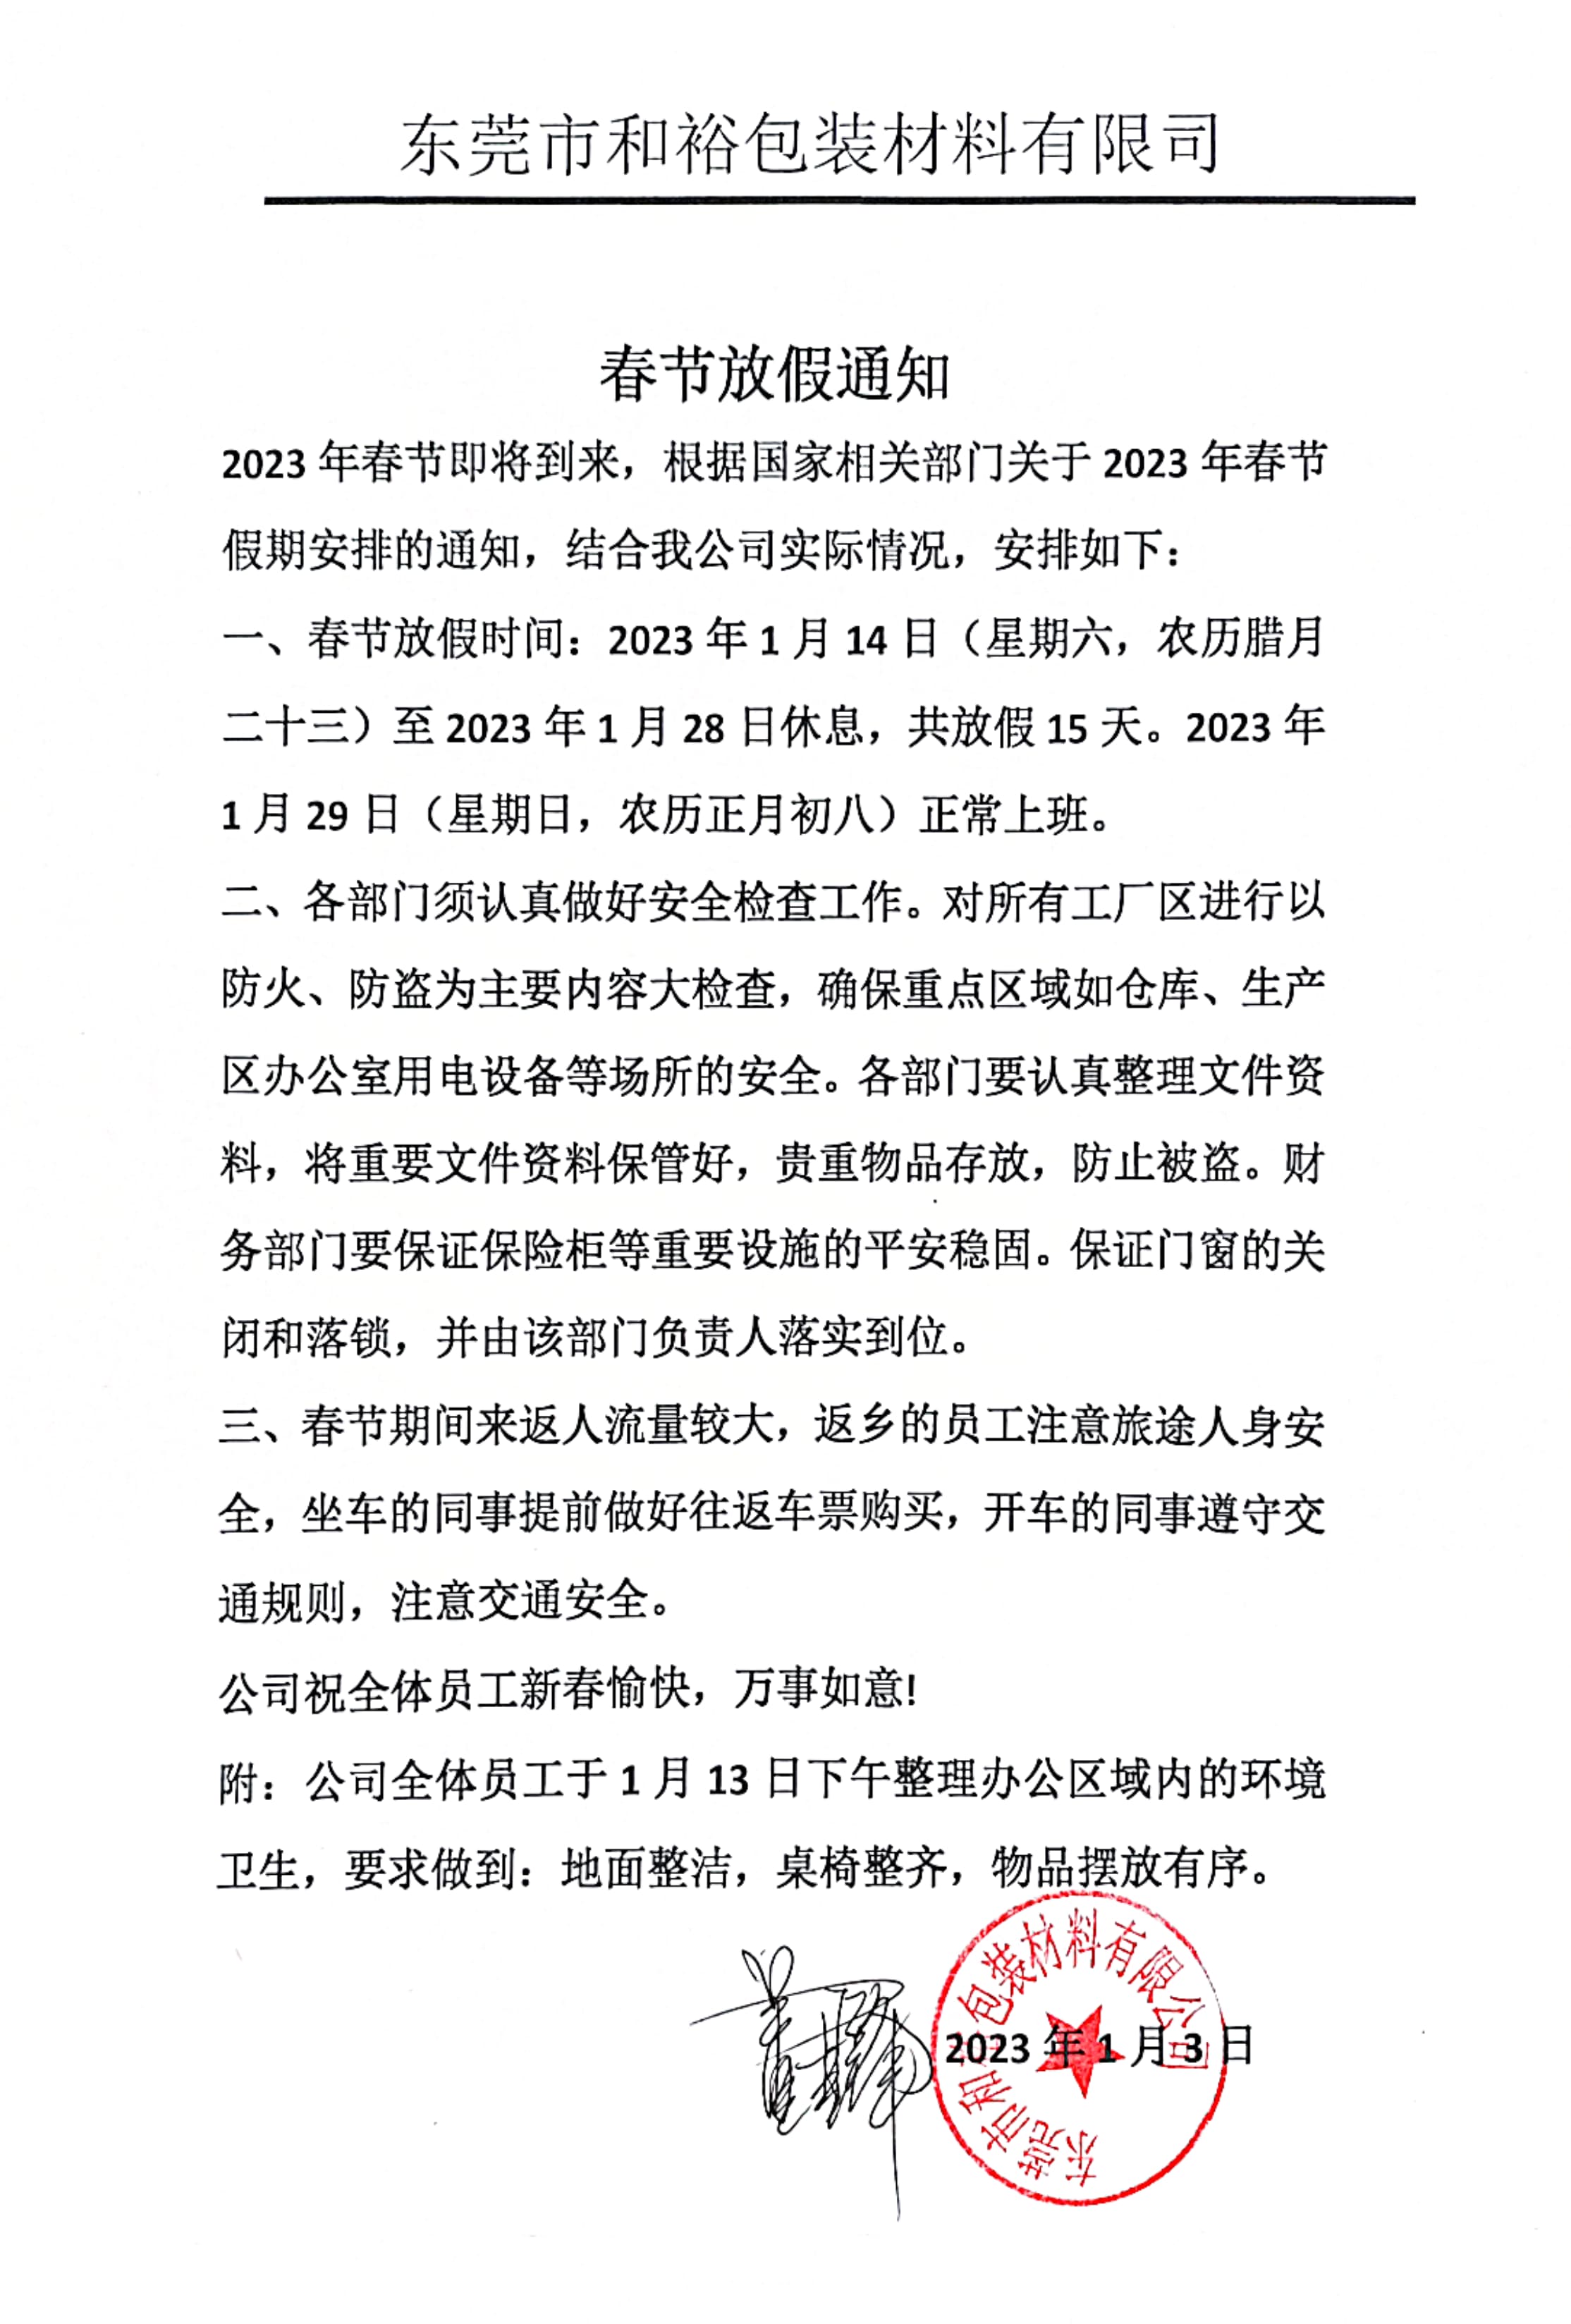 上海2023年和裕包装春节放假通知